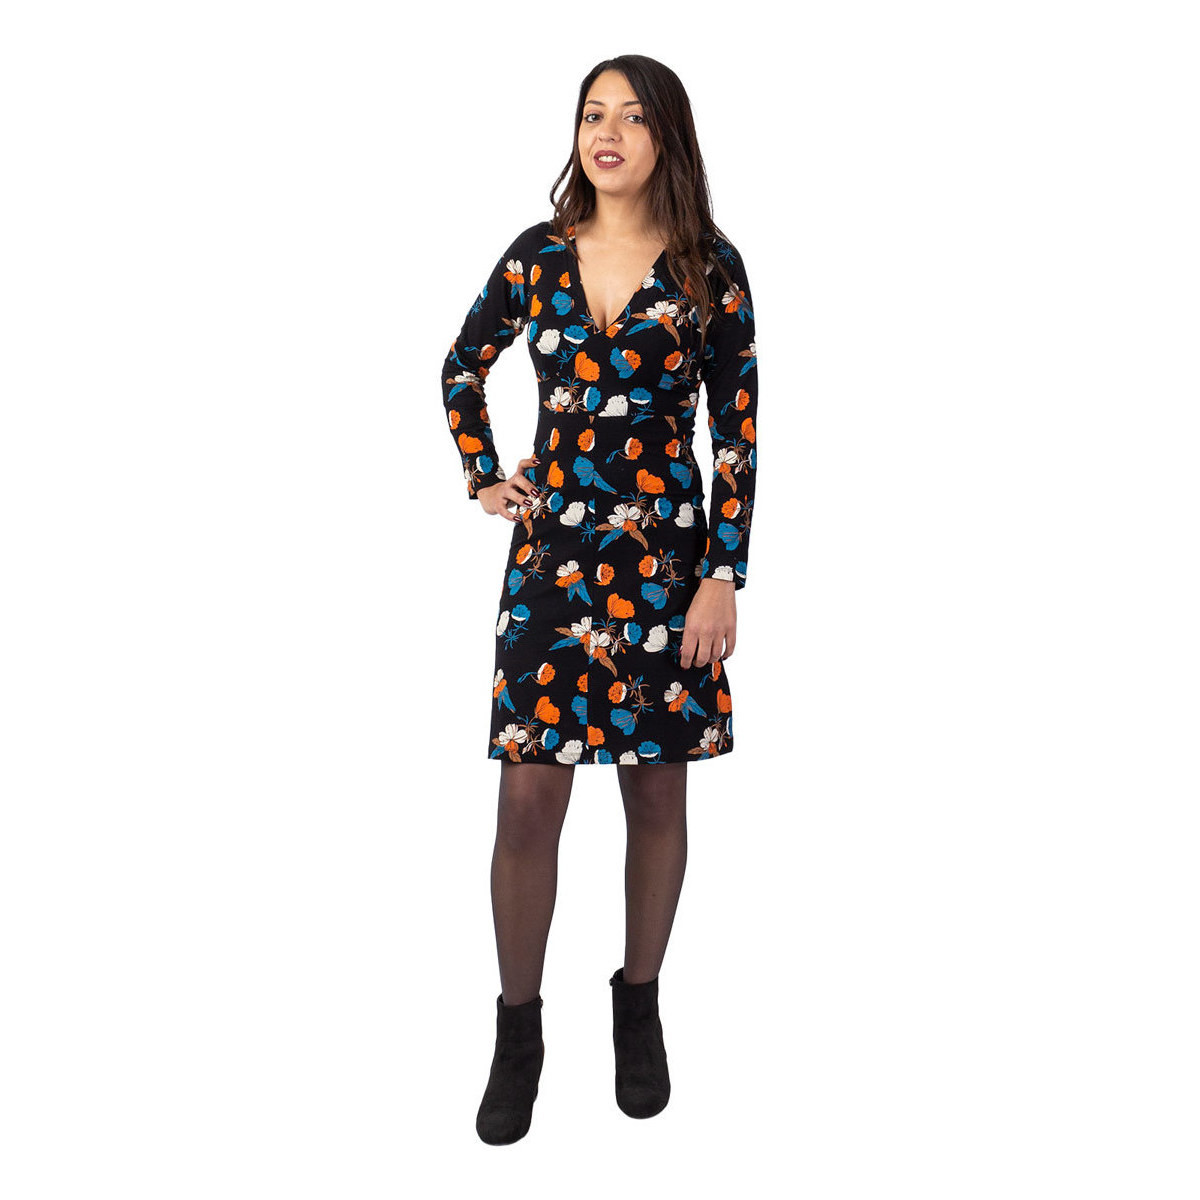 Vêtements Femme Robes Coton Du Monde courte 100% coton MEERA imprimé floral Noir